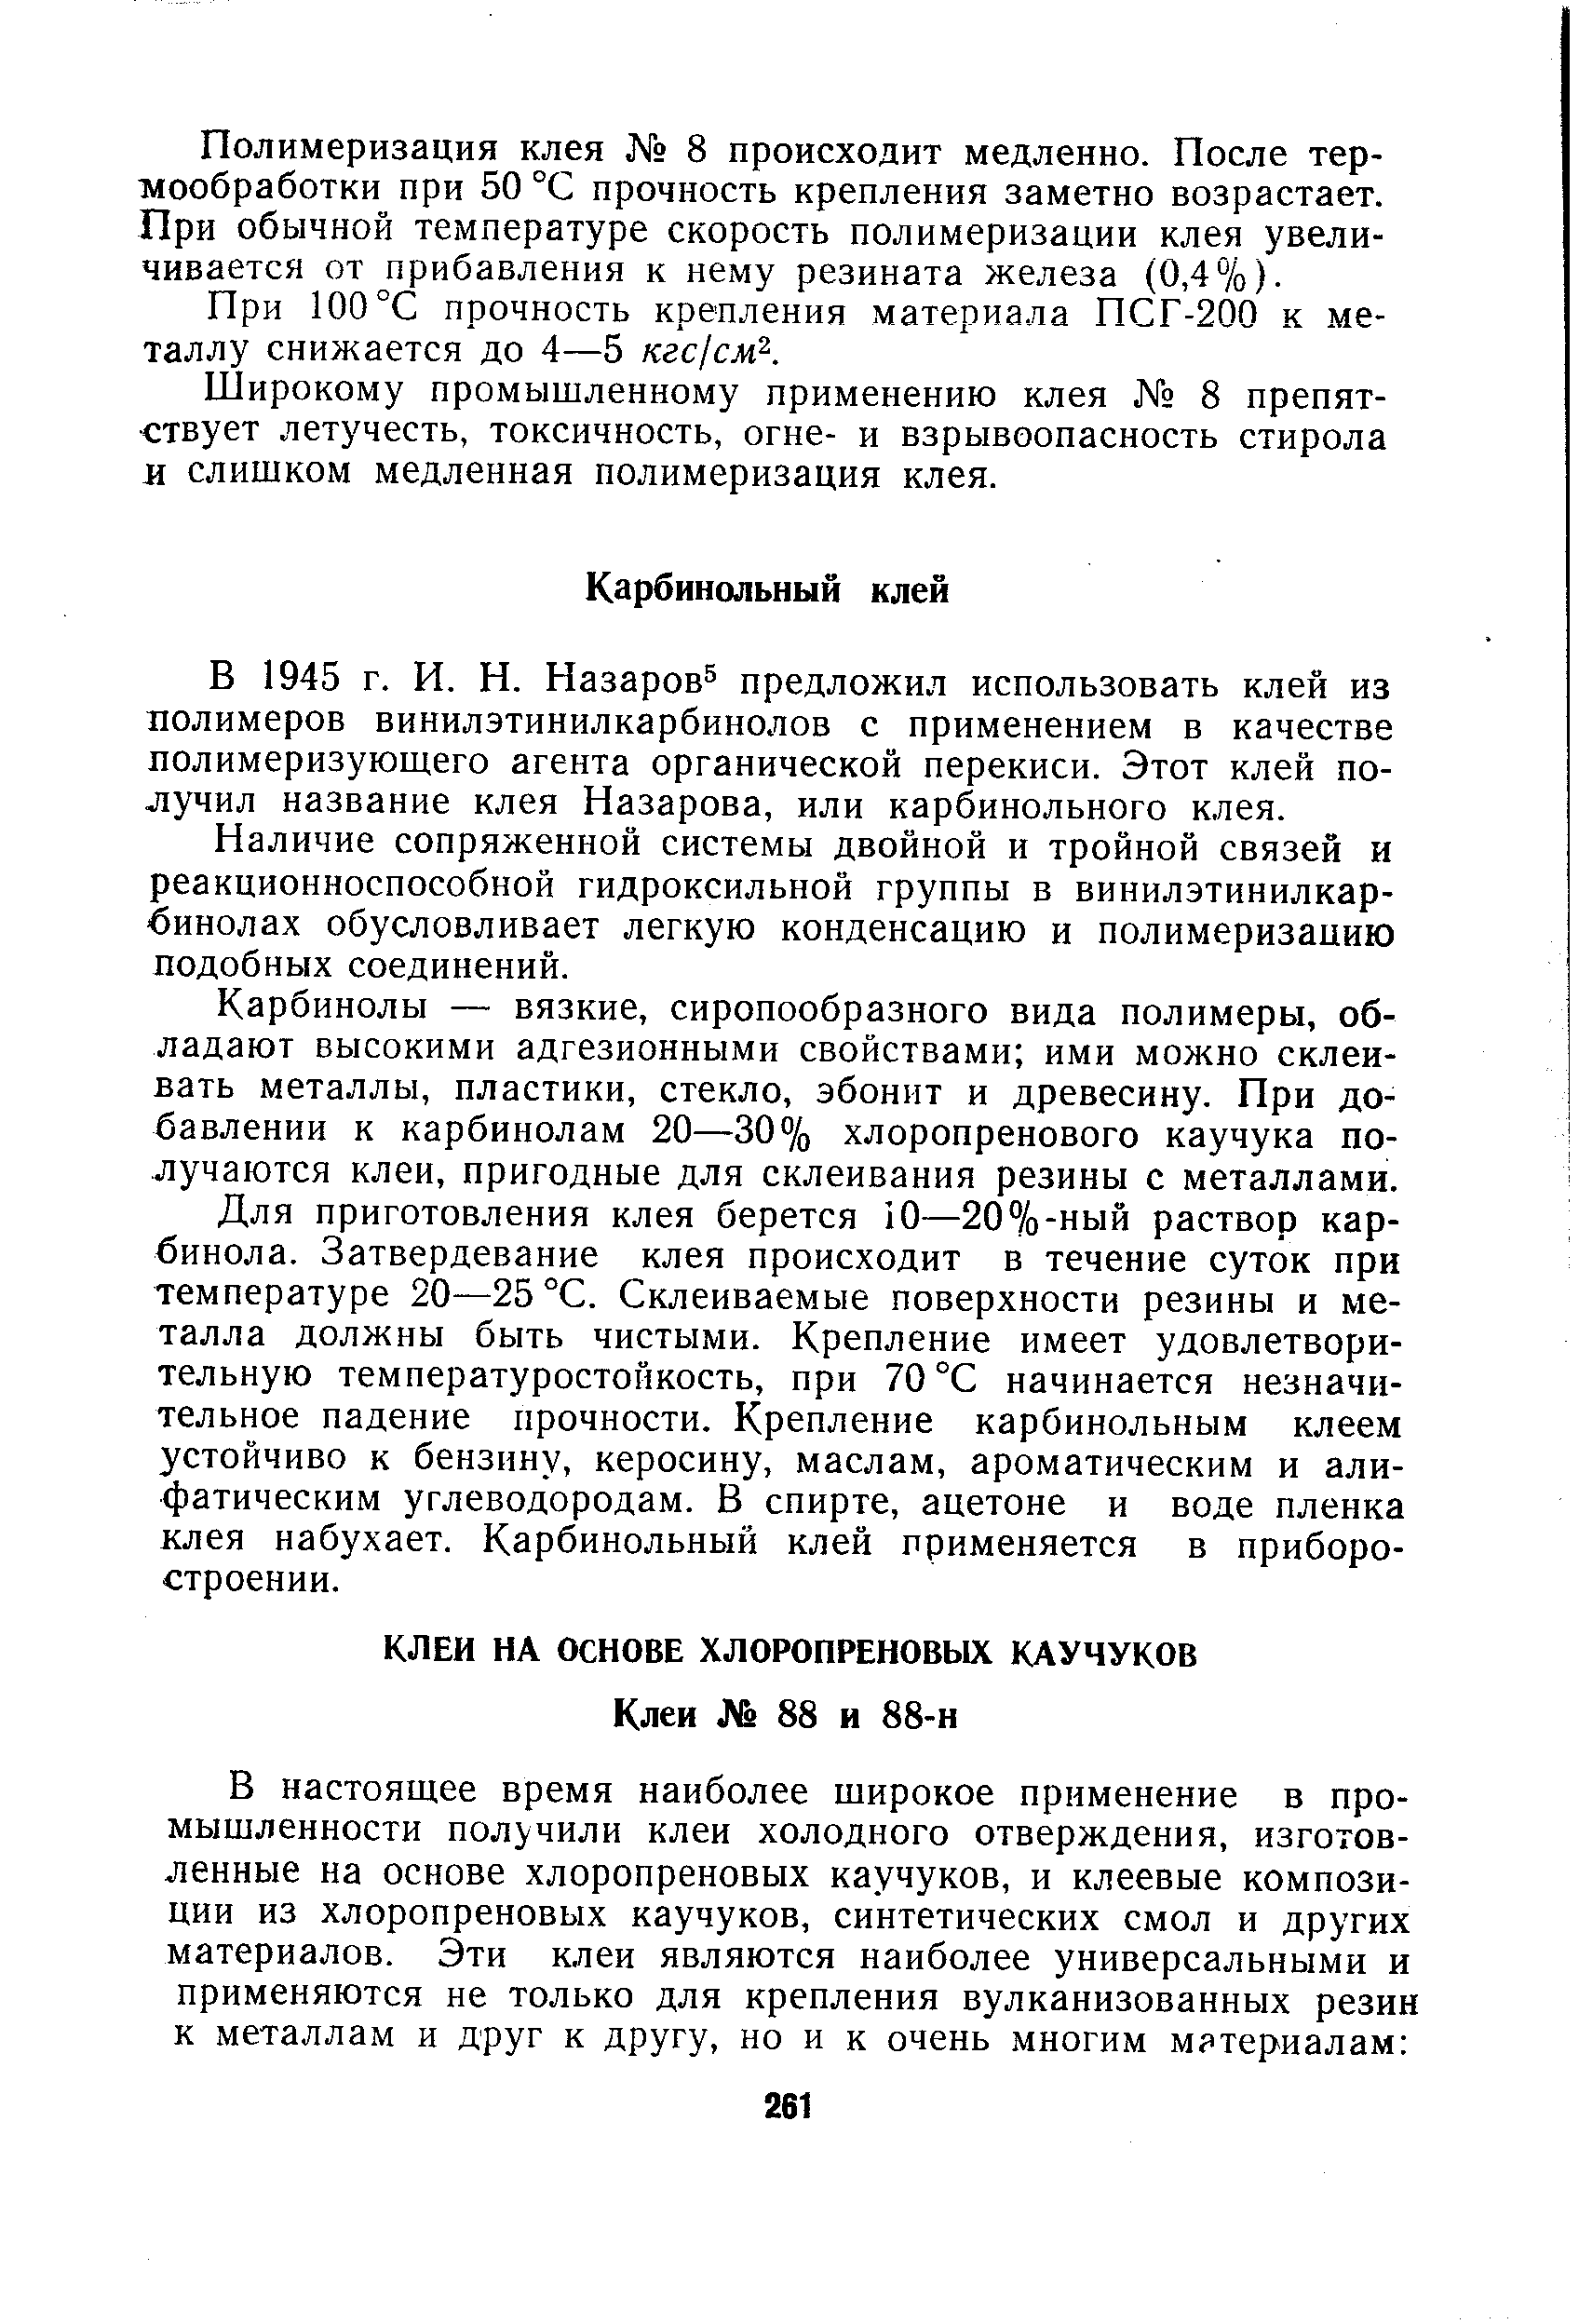 В 1945 г. И. И. Назаров предложил использовать клей из лолимеров винилэтинилкарбинолов с применением в качестве полимеризуюшего агента органической перекиси. Этот клей получил название клея Назарова, или карбинольного клея.